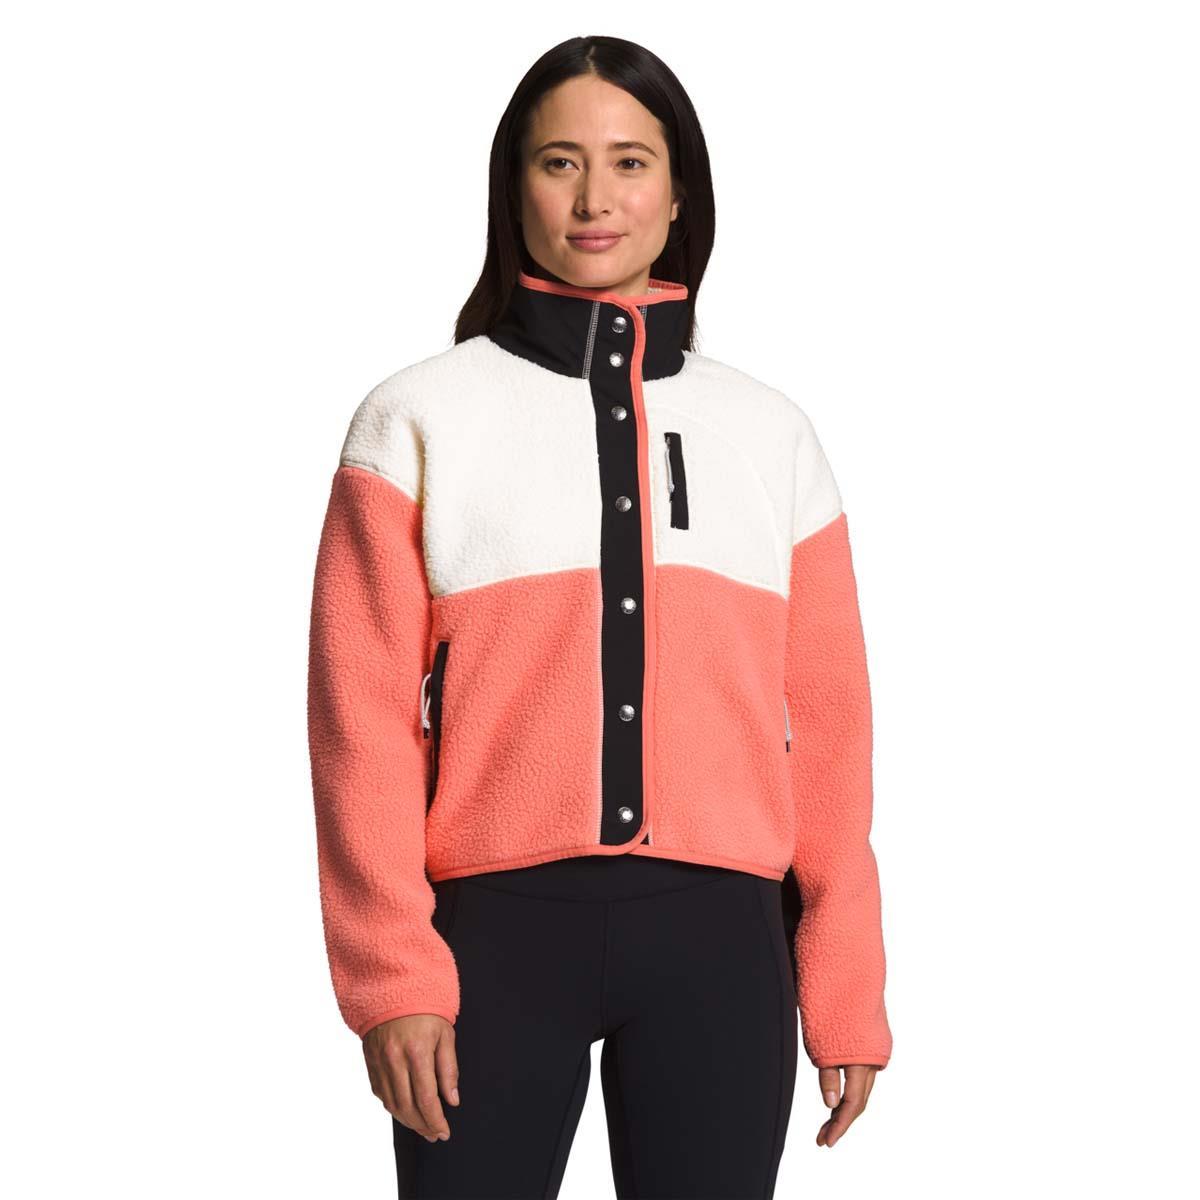 The North Face Plus Cragmont Fleece Jacket - Fleece jacket Women's